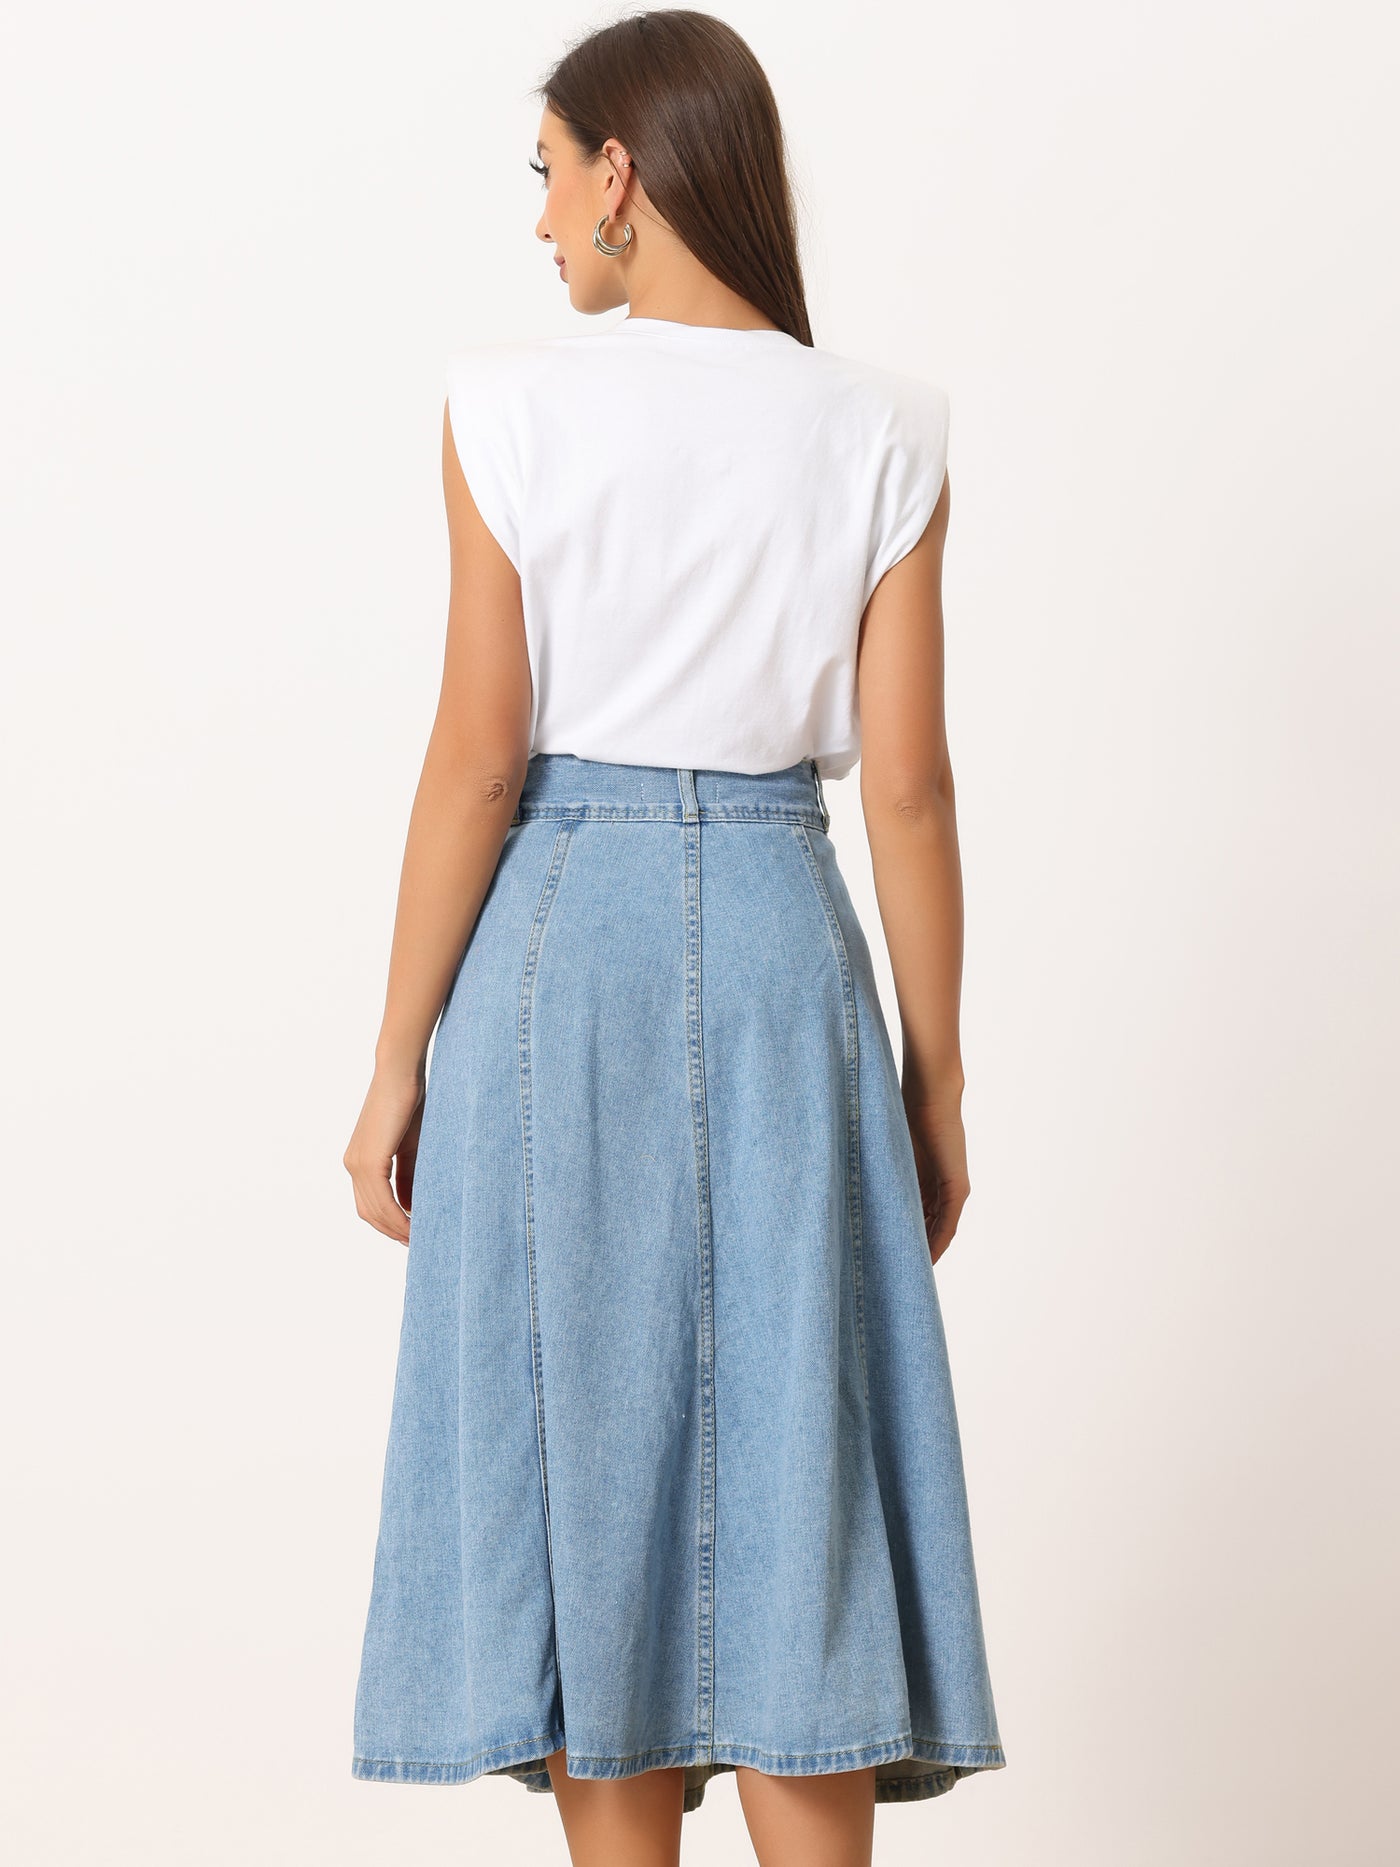 Allegra K Casual Denim High Waist A-Line Classic Long Jean Skirts